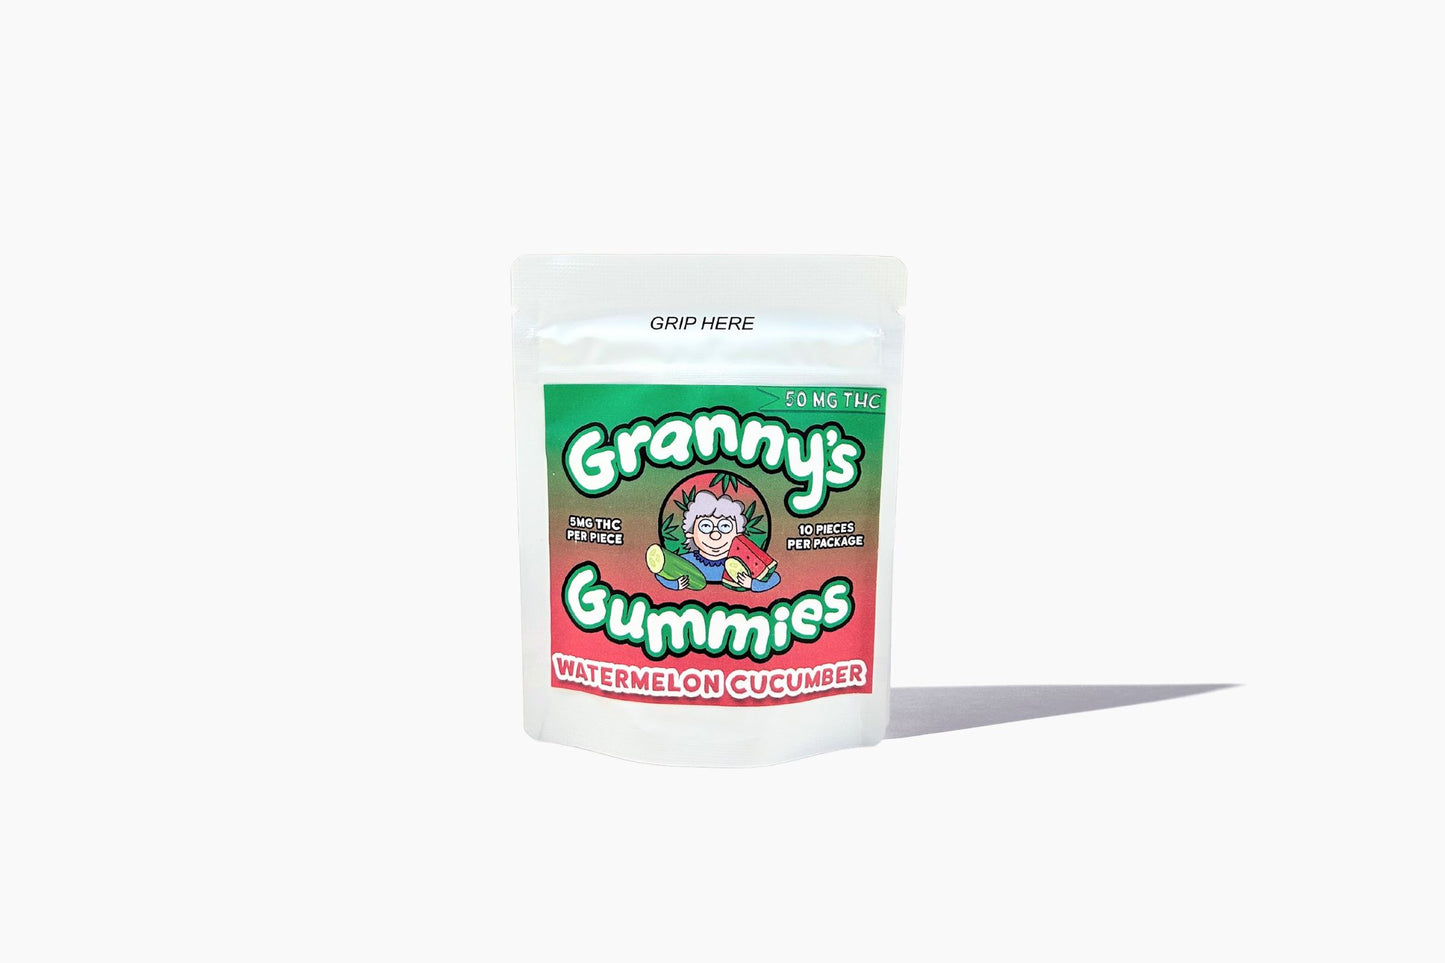 Granny's Watermelon Cucumber Gummies 50mg THC